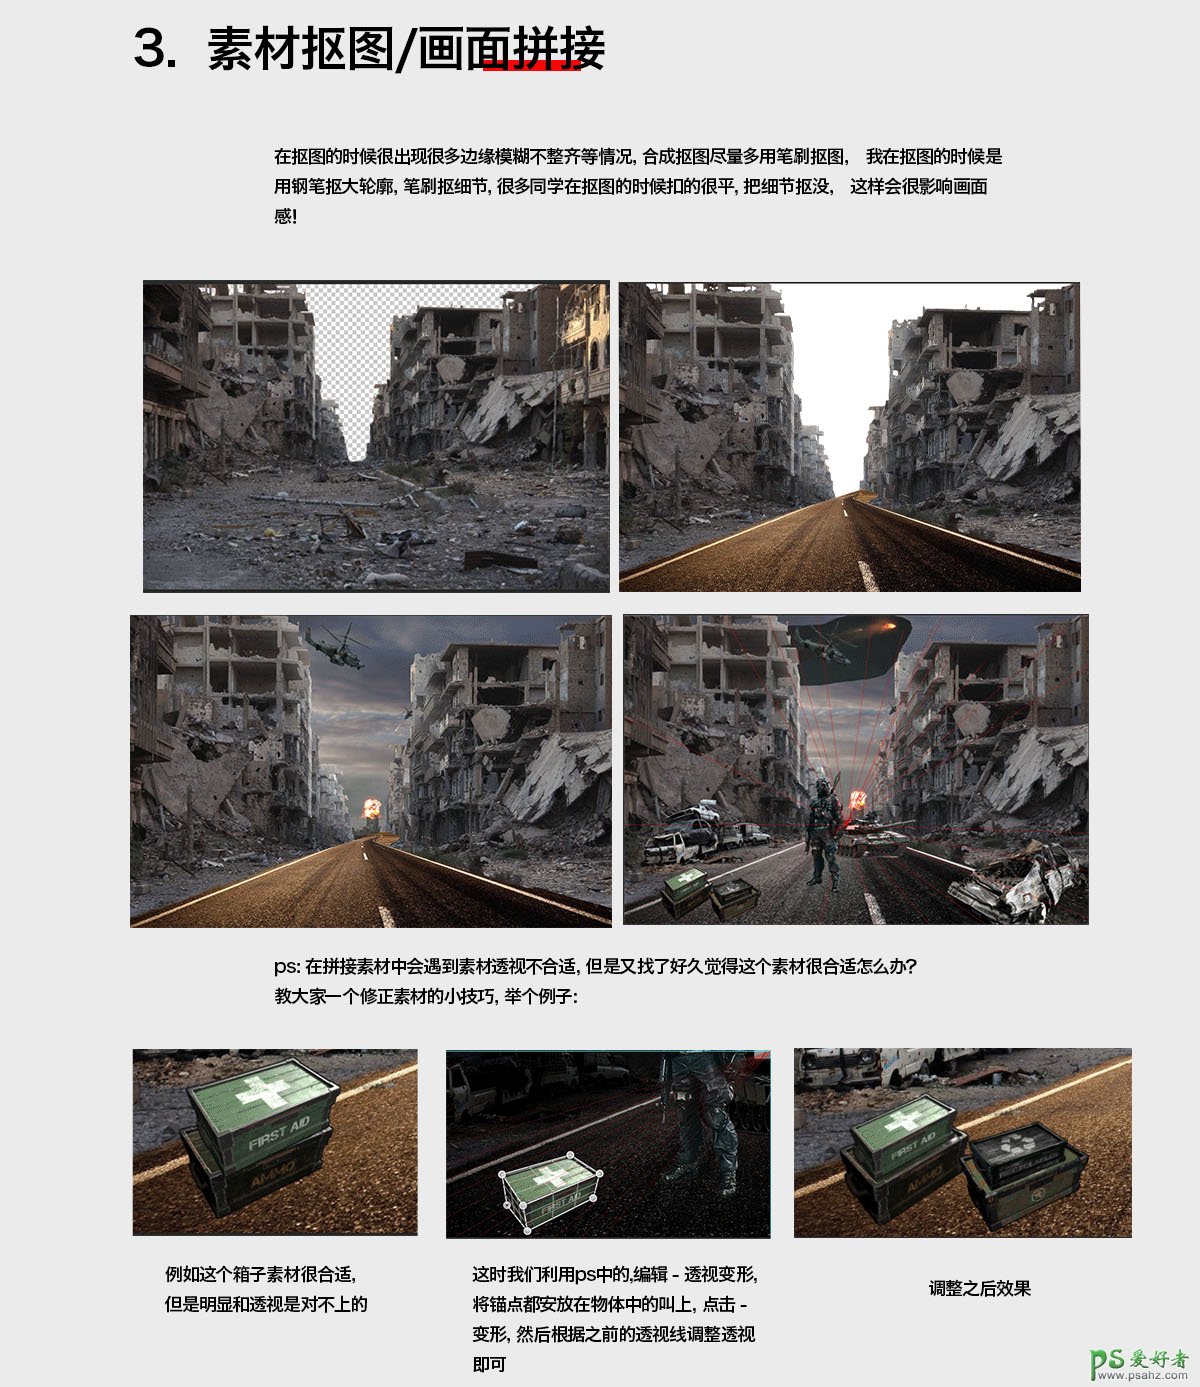 PS科技海报制作教程：利用合成技术制作战火中的废墟城市海报